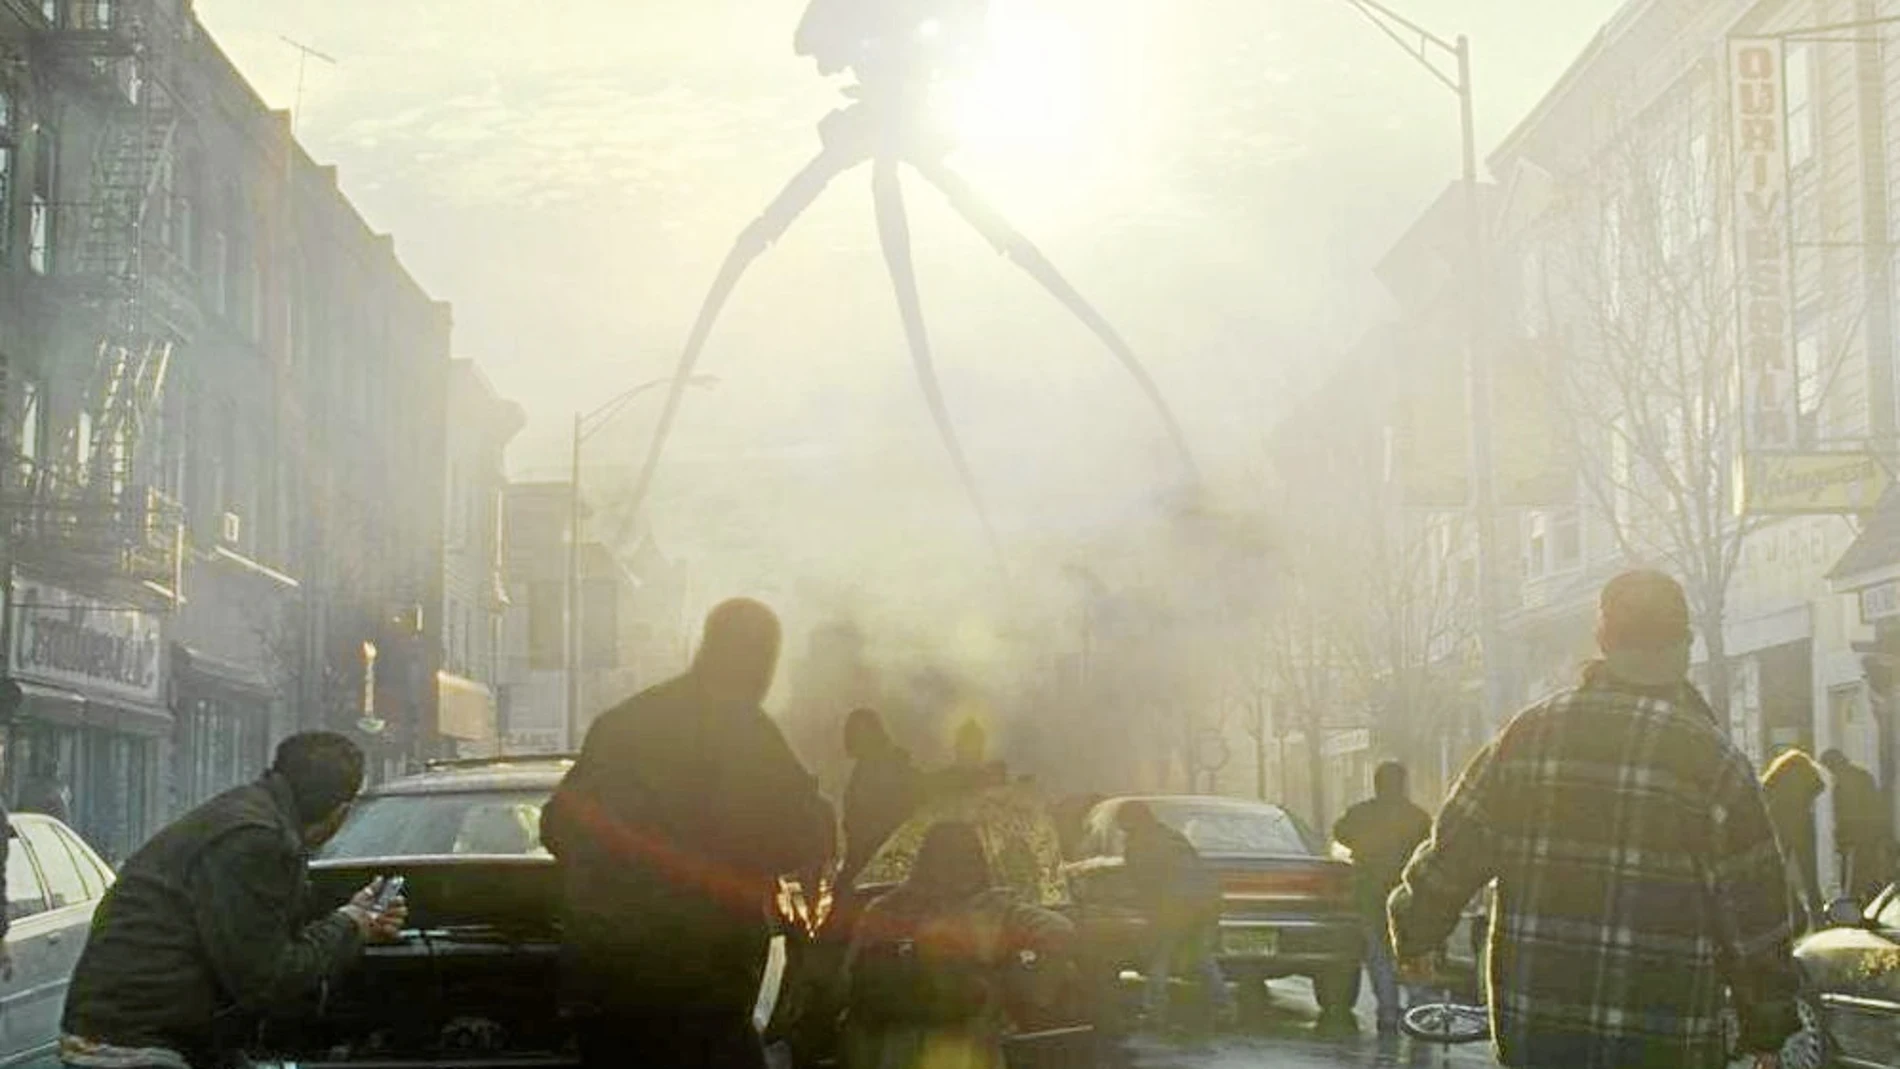 Fotograma de la película basada en la obra de Wells, dirigida en 2005 por Steven Spielberg y protagonizada por Tom Cruise.